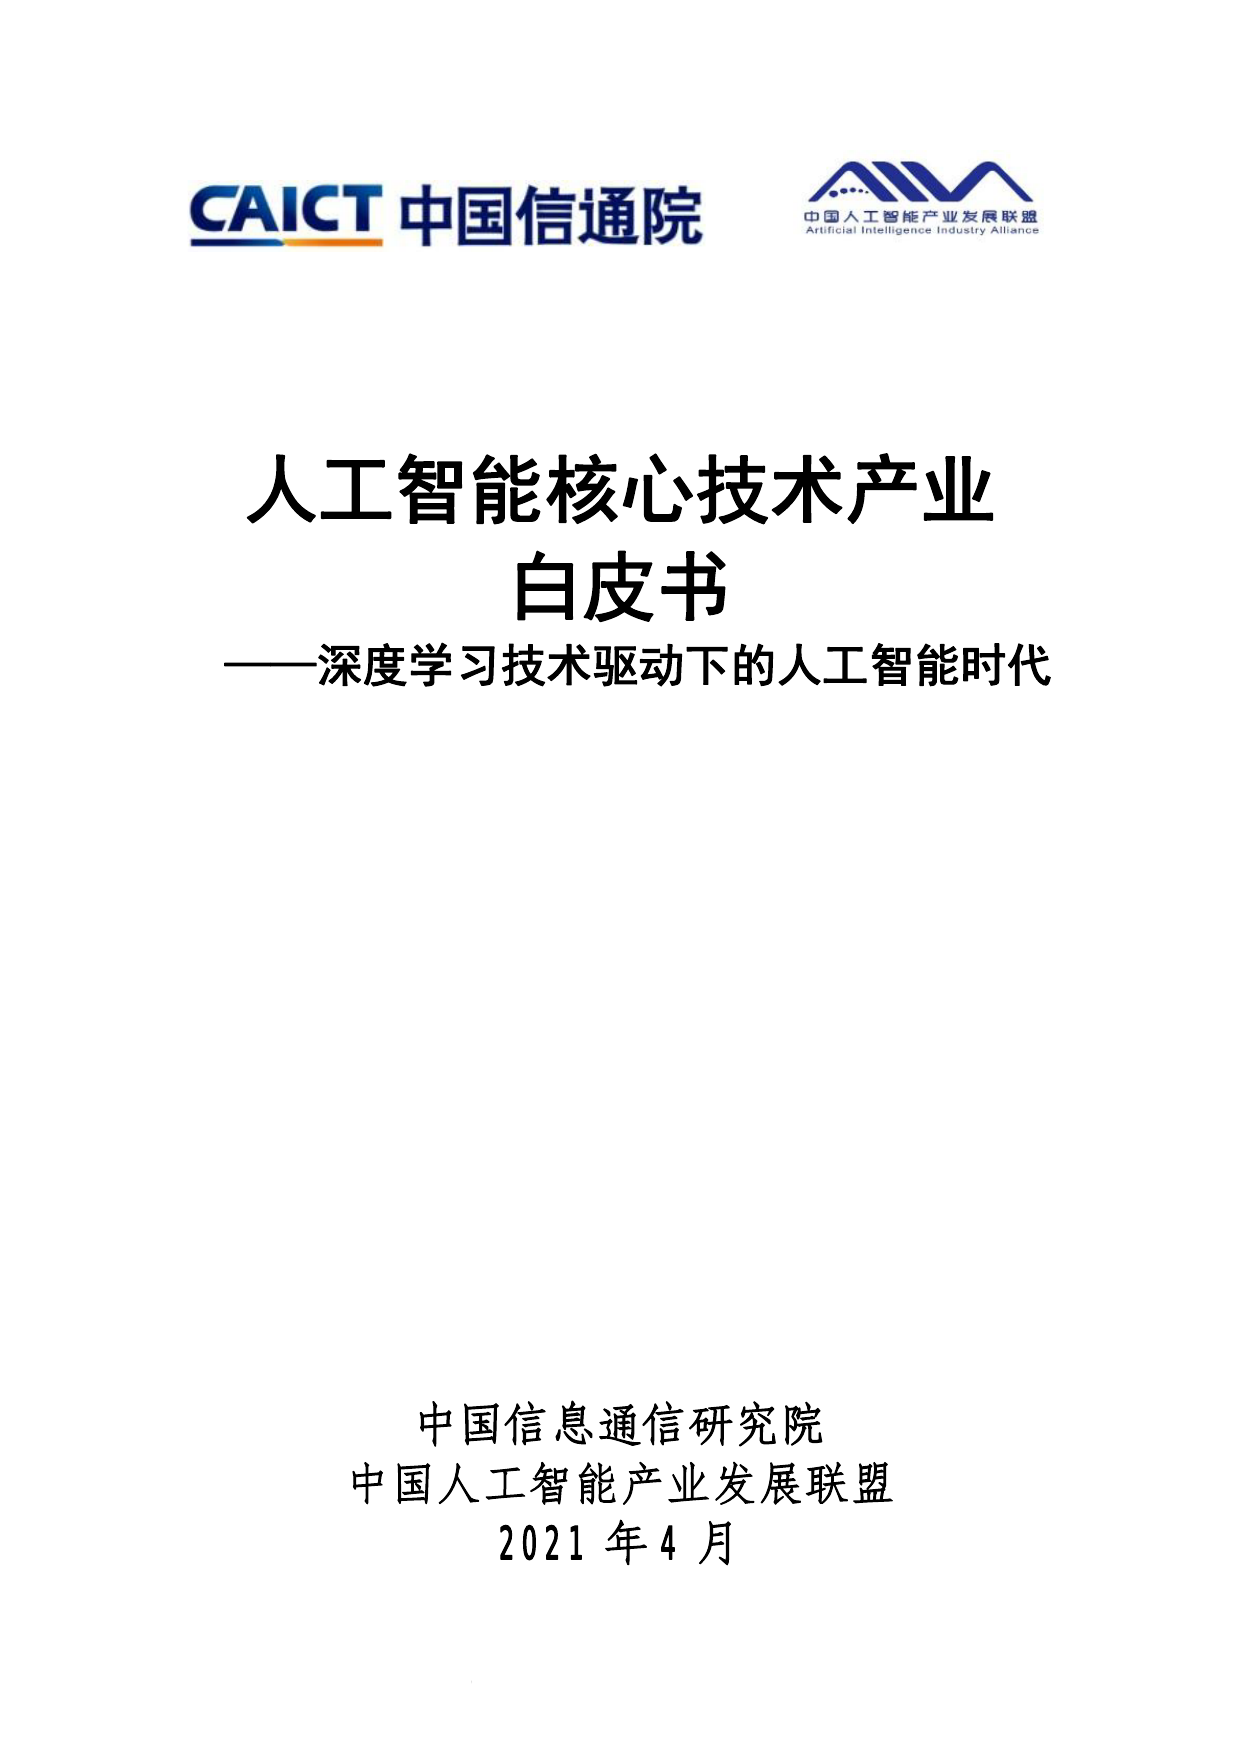 中国信通院--人工智能行业核心技术产业白皮书：深度学习技术驱动下的人工智能时代-2021-04-23